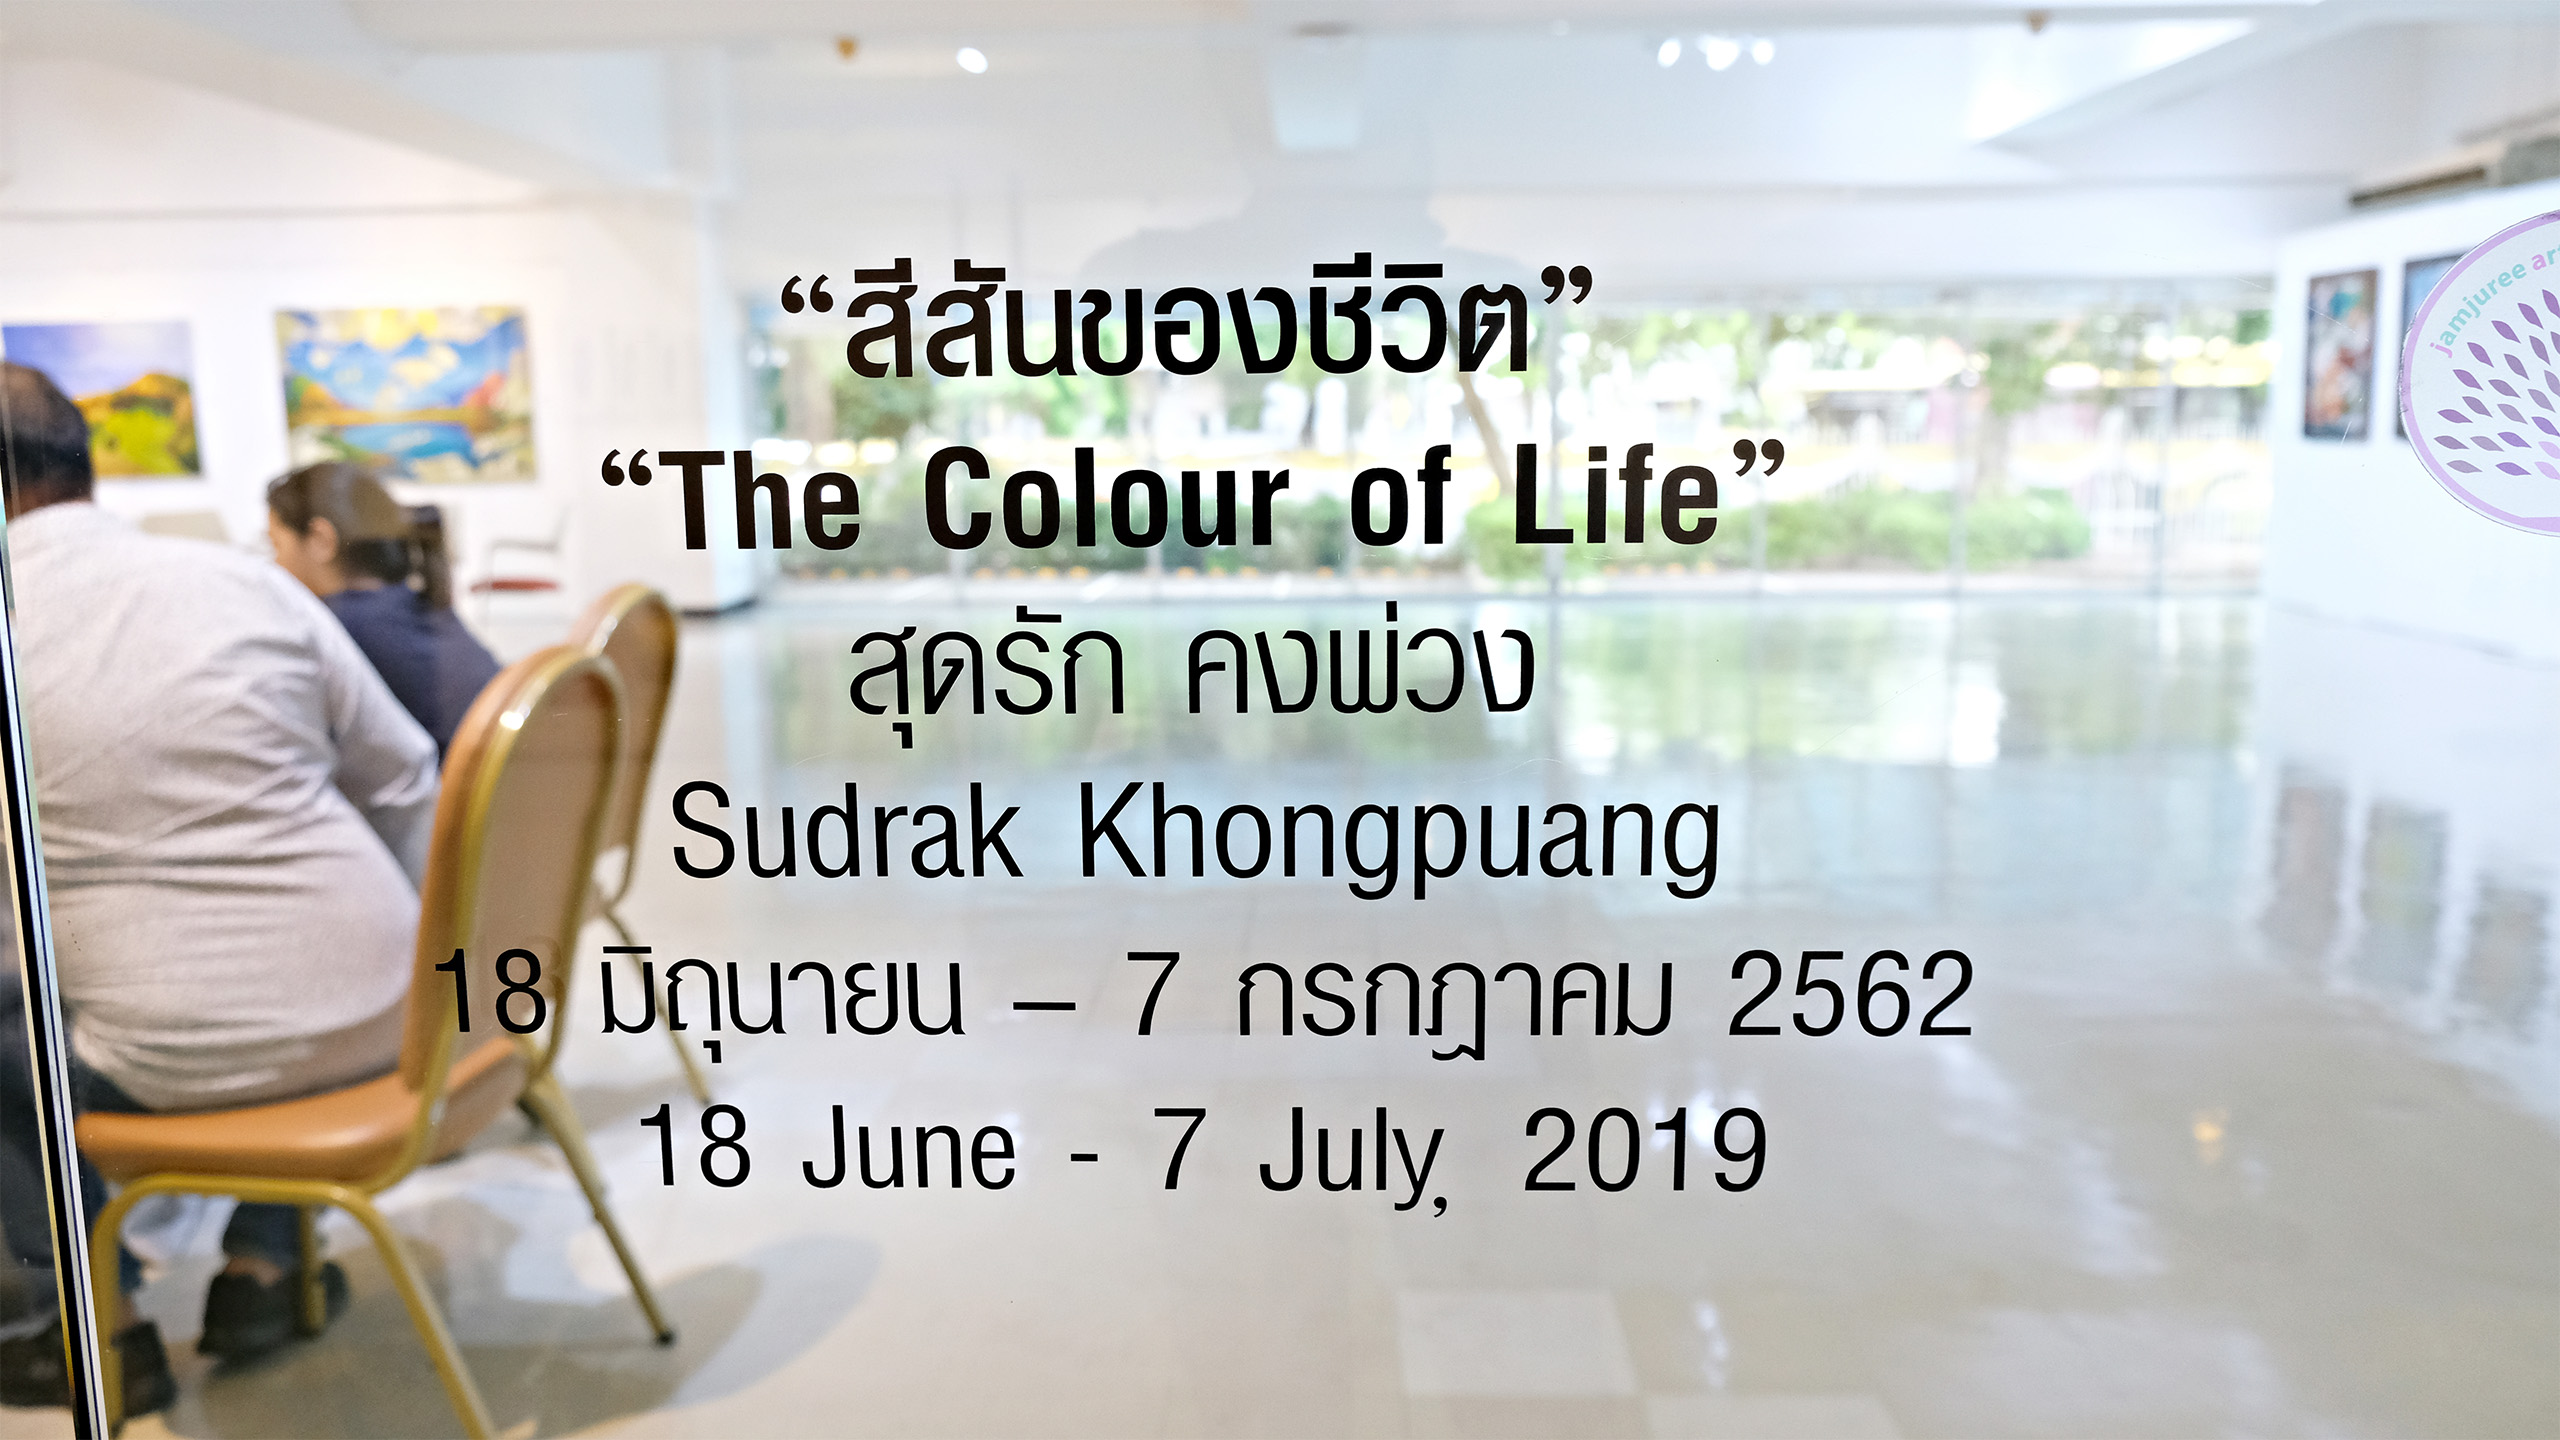 The Colour of Life by Sudrak Khongpuang | สีสันของชีวิต โดย สุดรัก คงพ่วง